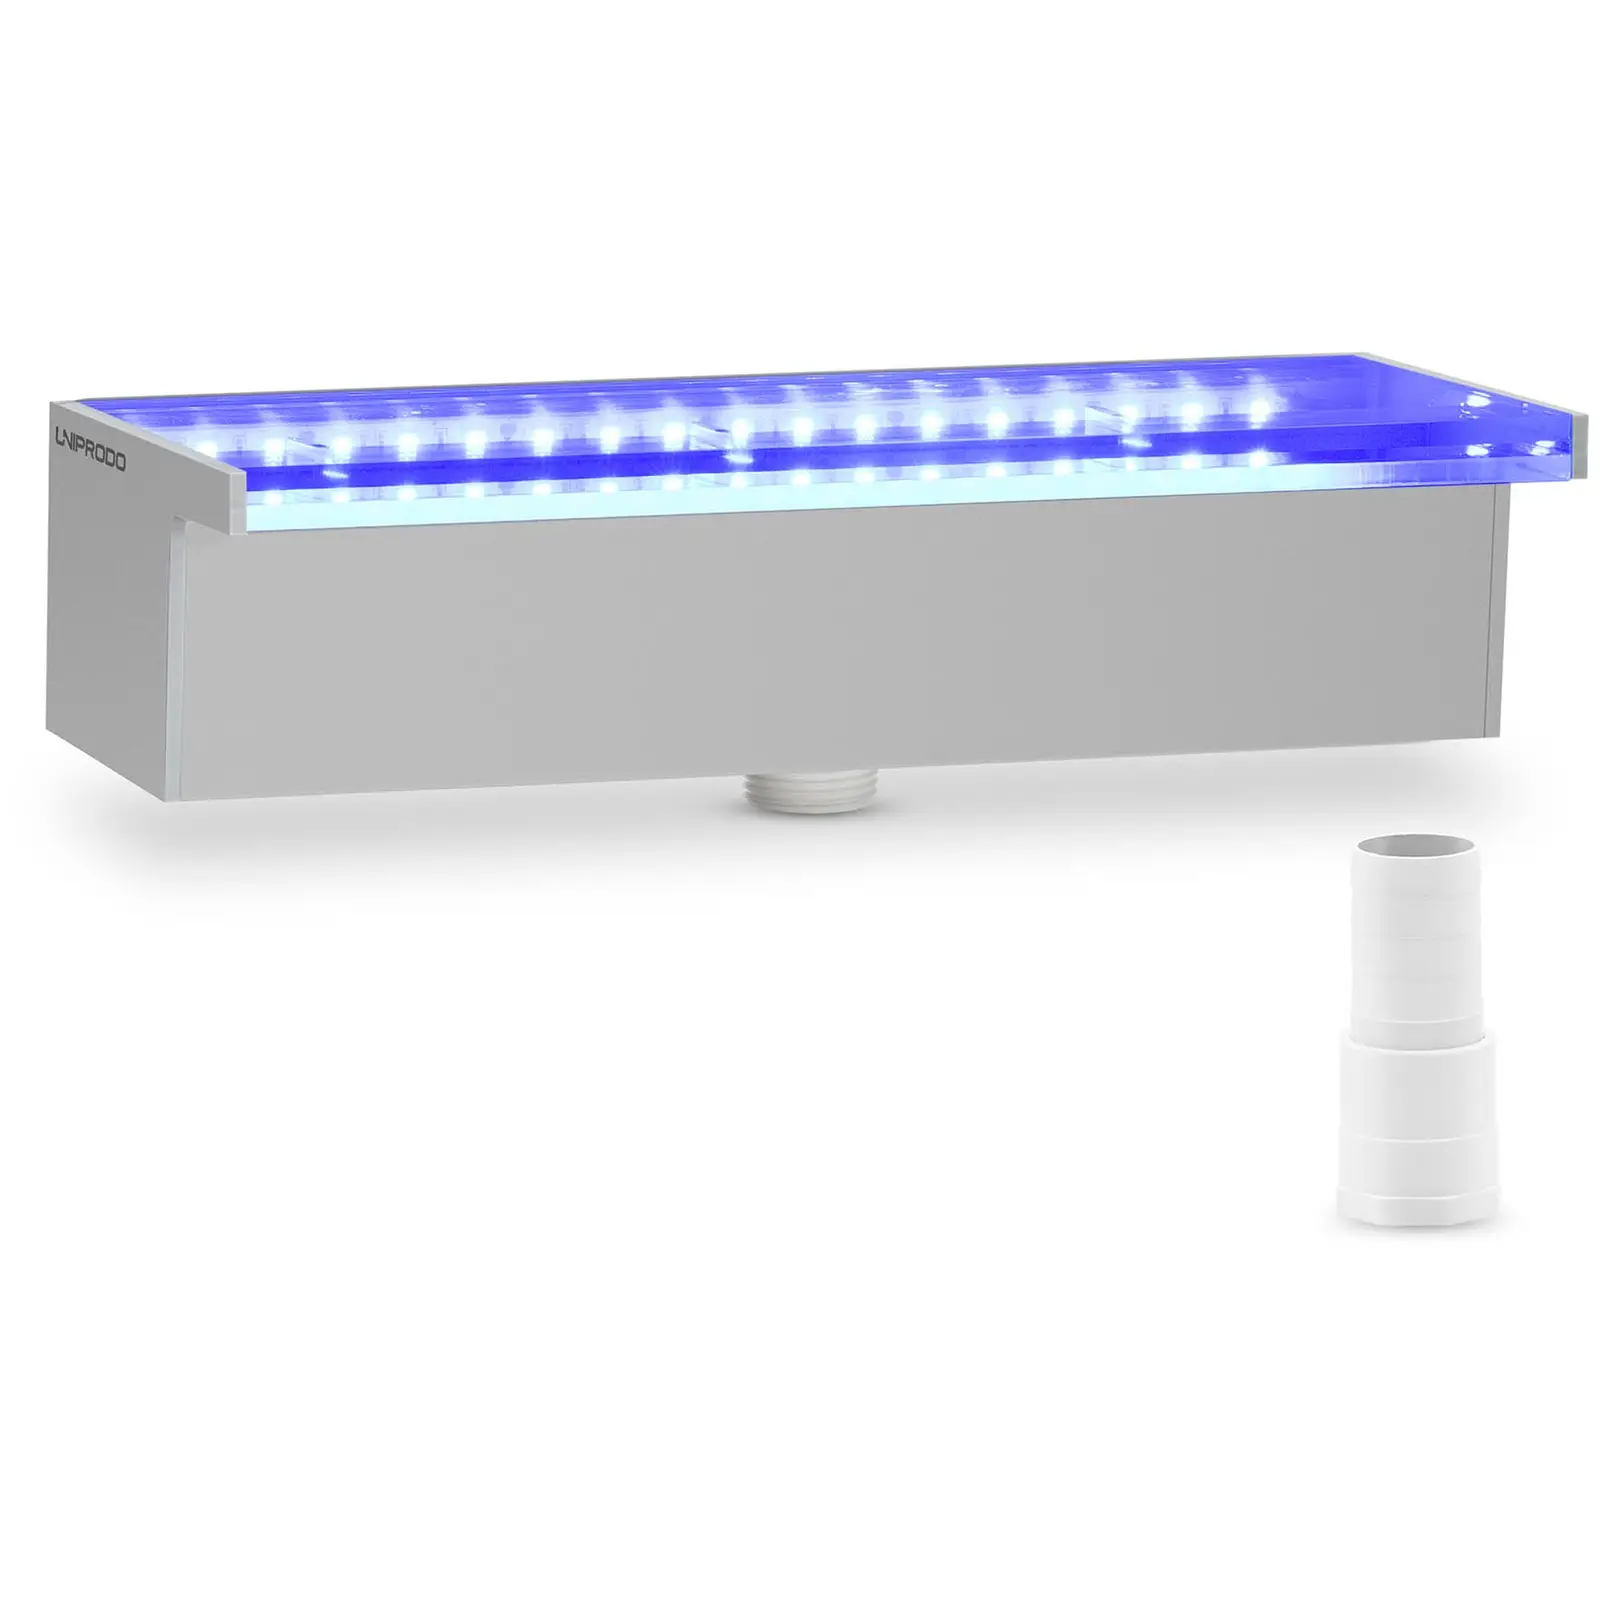 Vesiputoussuihku - 30 cm - LED-valaistus - sininen/valkoinen - syvä vesiputki